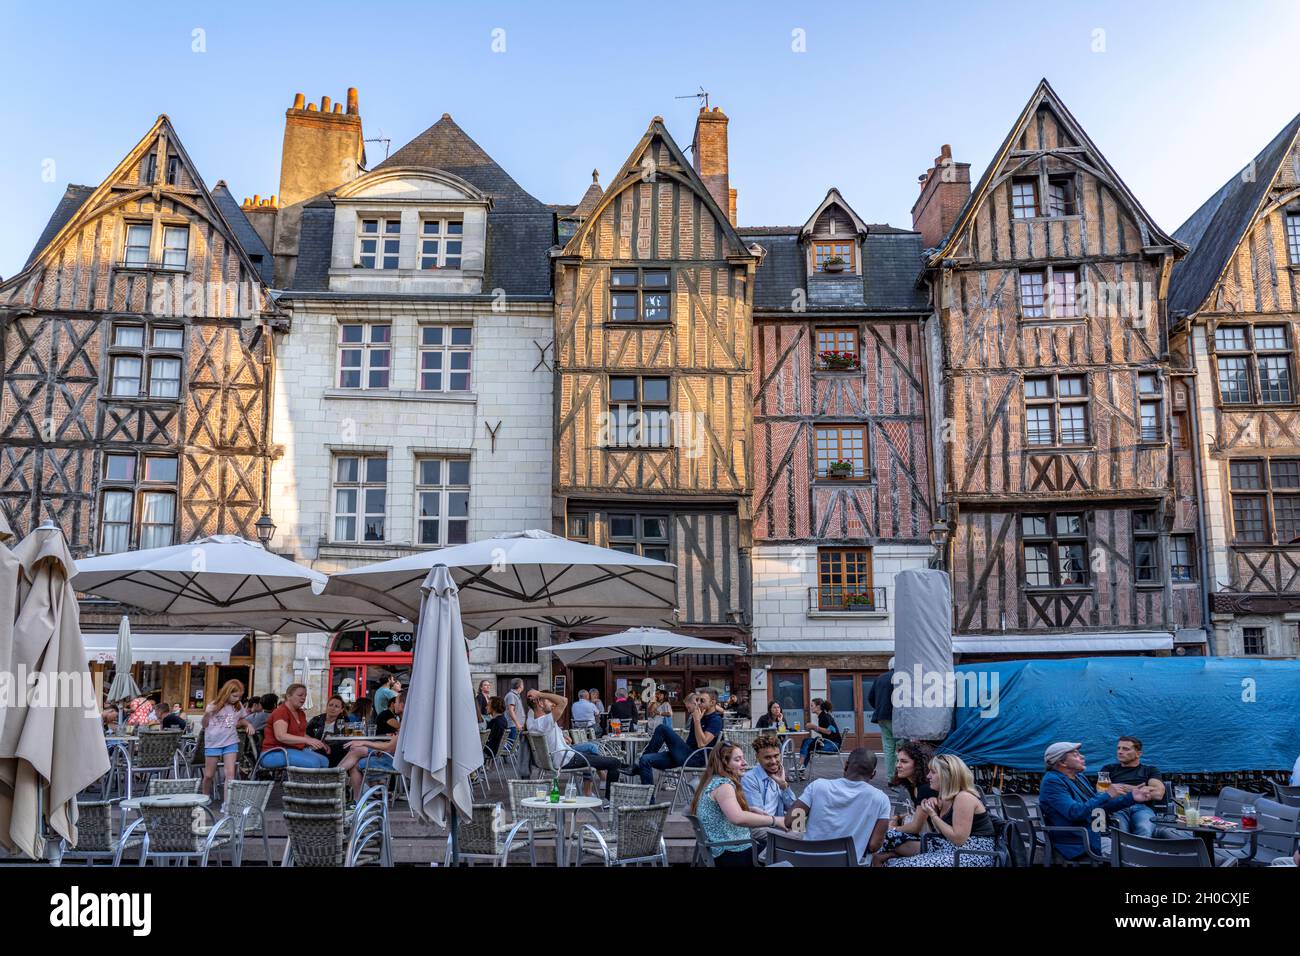 Mittelalterliche Gebäude und voll bestetzte Restaurants auf dem zentralen Platz Place Plumereau, Tours, Loiretal, Frankreich | mittelalterliche Gebäude an Stockfoto